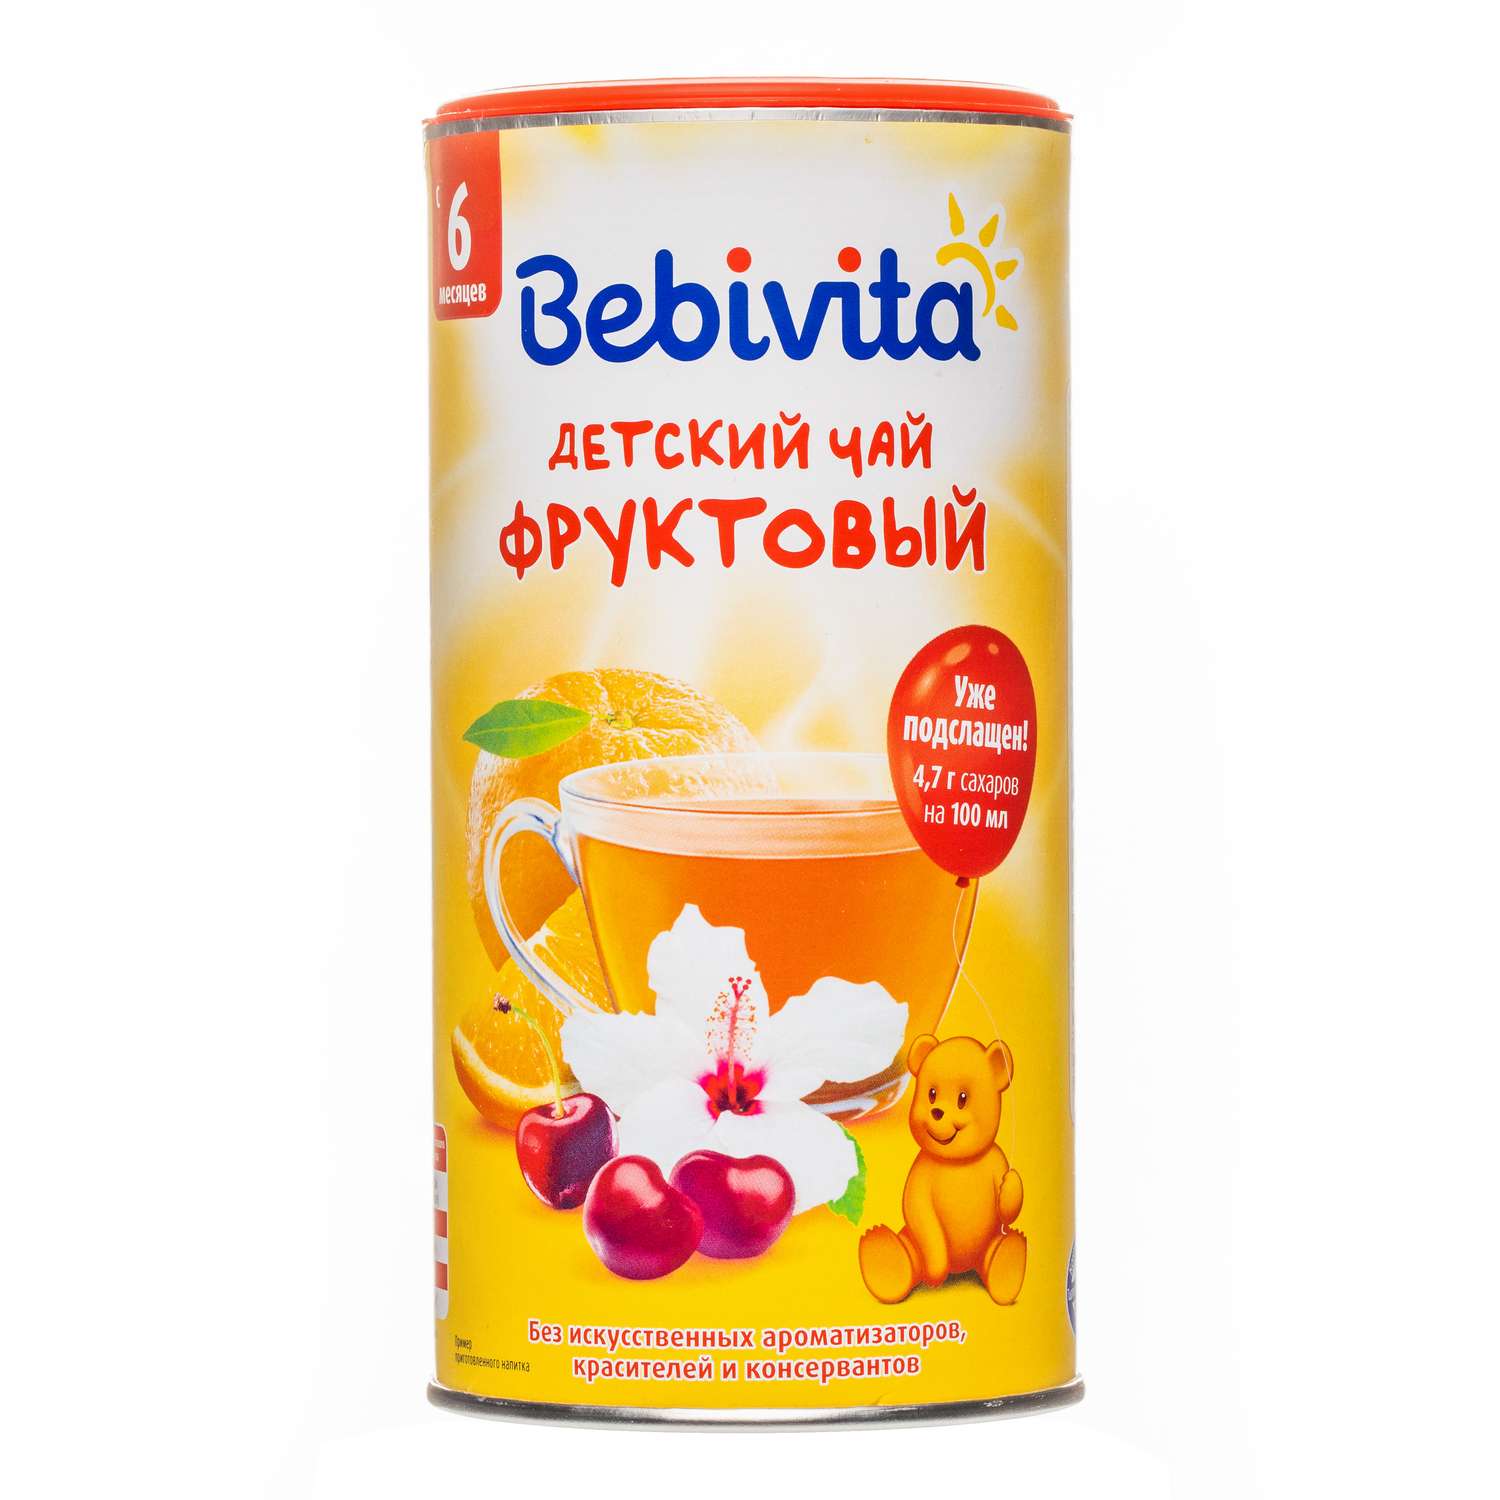 Чай Bebivita гранулированный фруктовый 200г с 6месяцев - фото 2